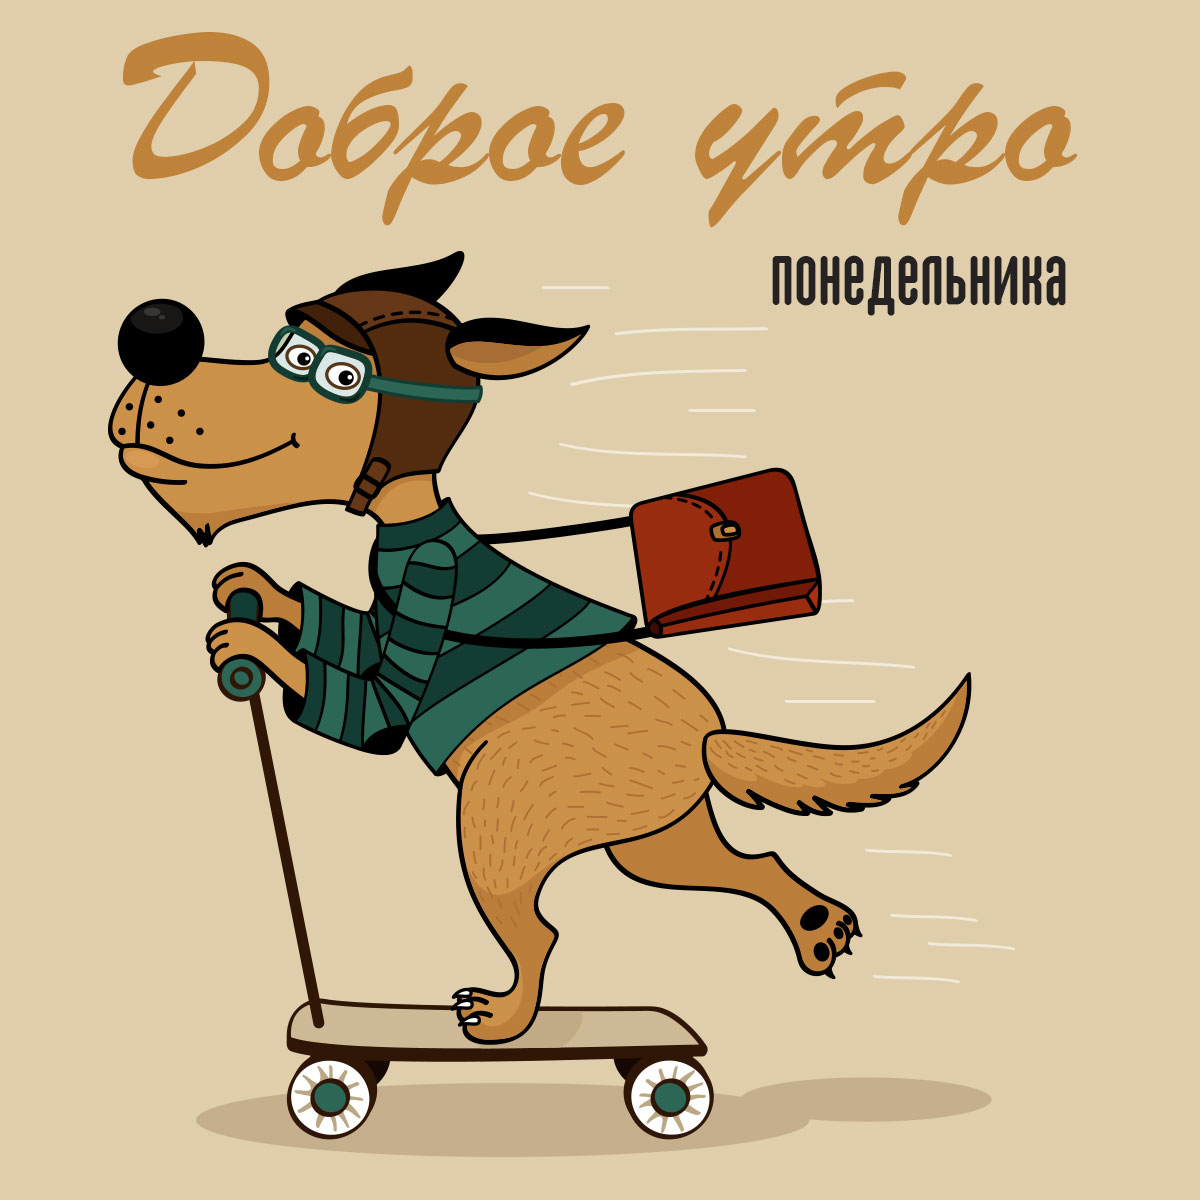 Открытка доброе утро понедельника - собака с портфелем в полосатой кофте и летном шлеме катится на самокате.